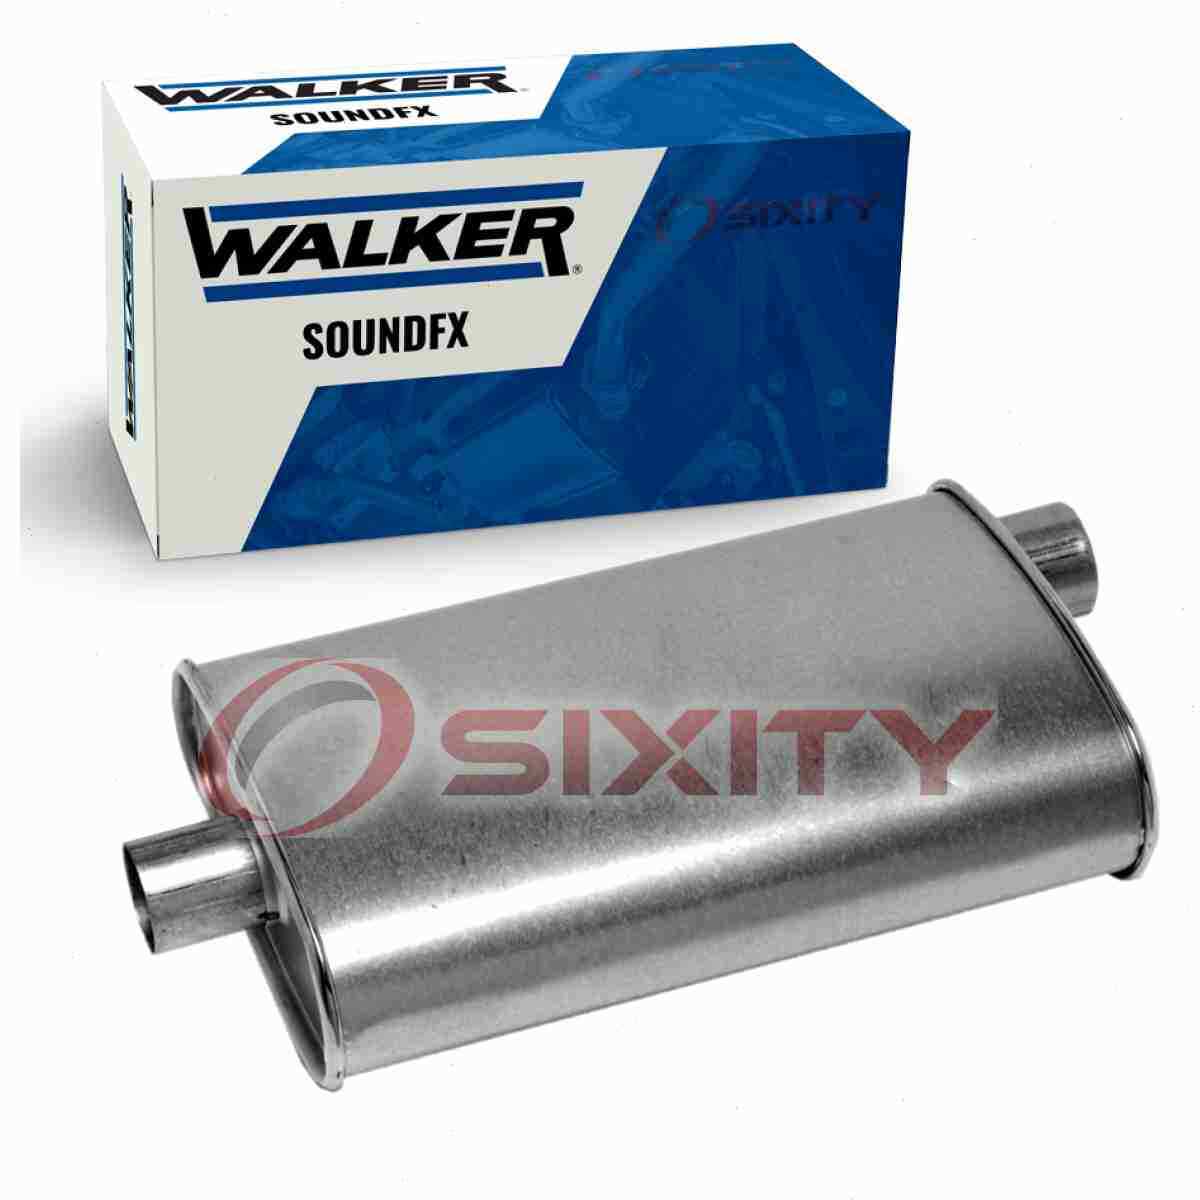 Walker SoundFX Exhaust Muffler for 1985-1987 Oldsmobile Calais 2.5L 3.0L L4 vz